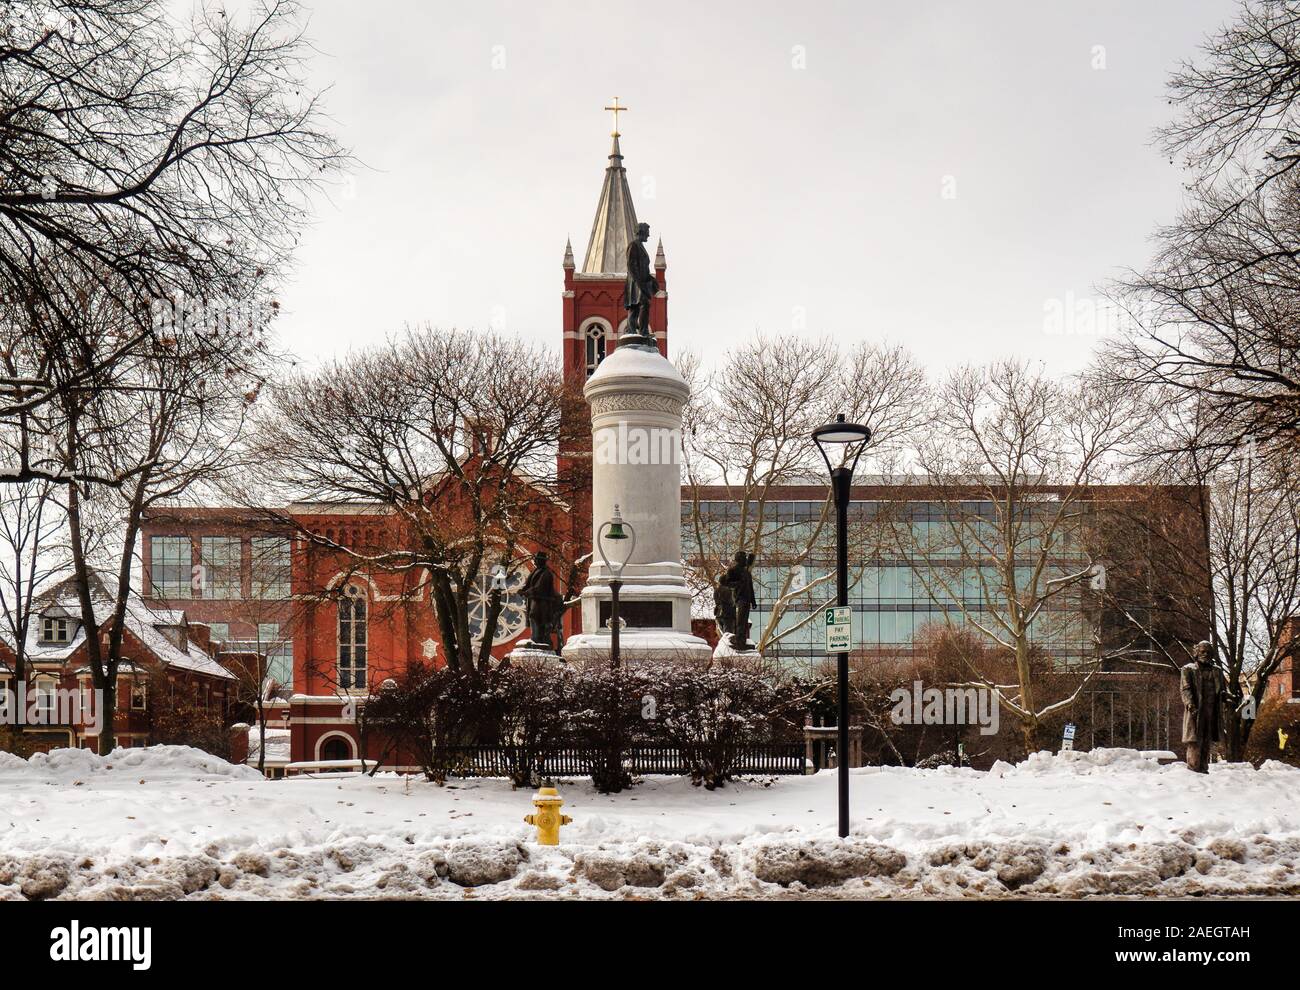 Rochester, New York, USA. Dezember 8, 2019. Blick auf den Washington Square Park in der Innenstadt von Rochester, New York, nach einem späten Herbst Schneefall mit dem Soldi Stockfoto